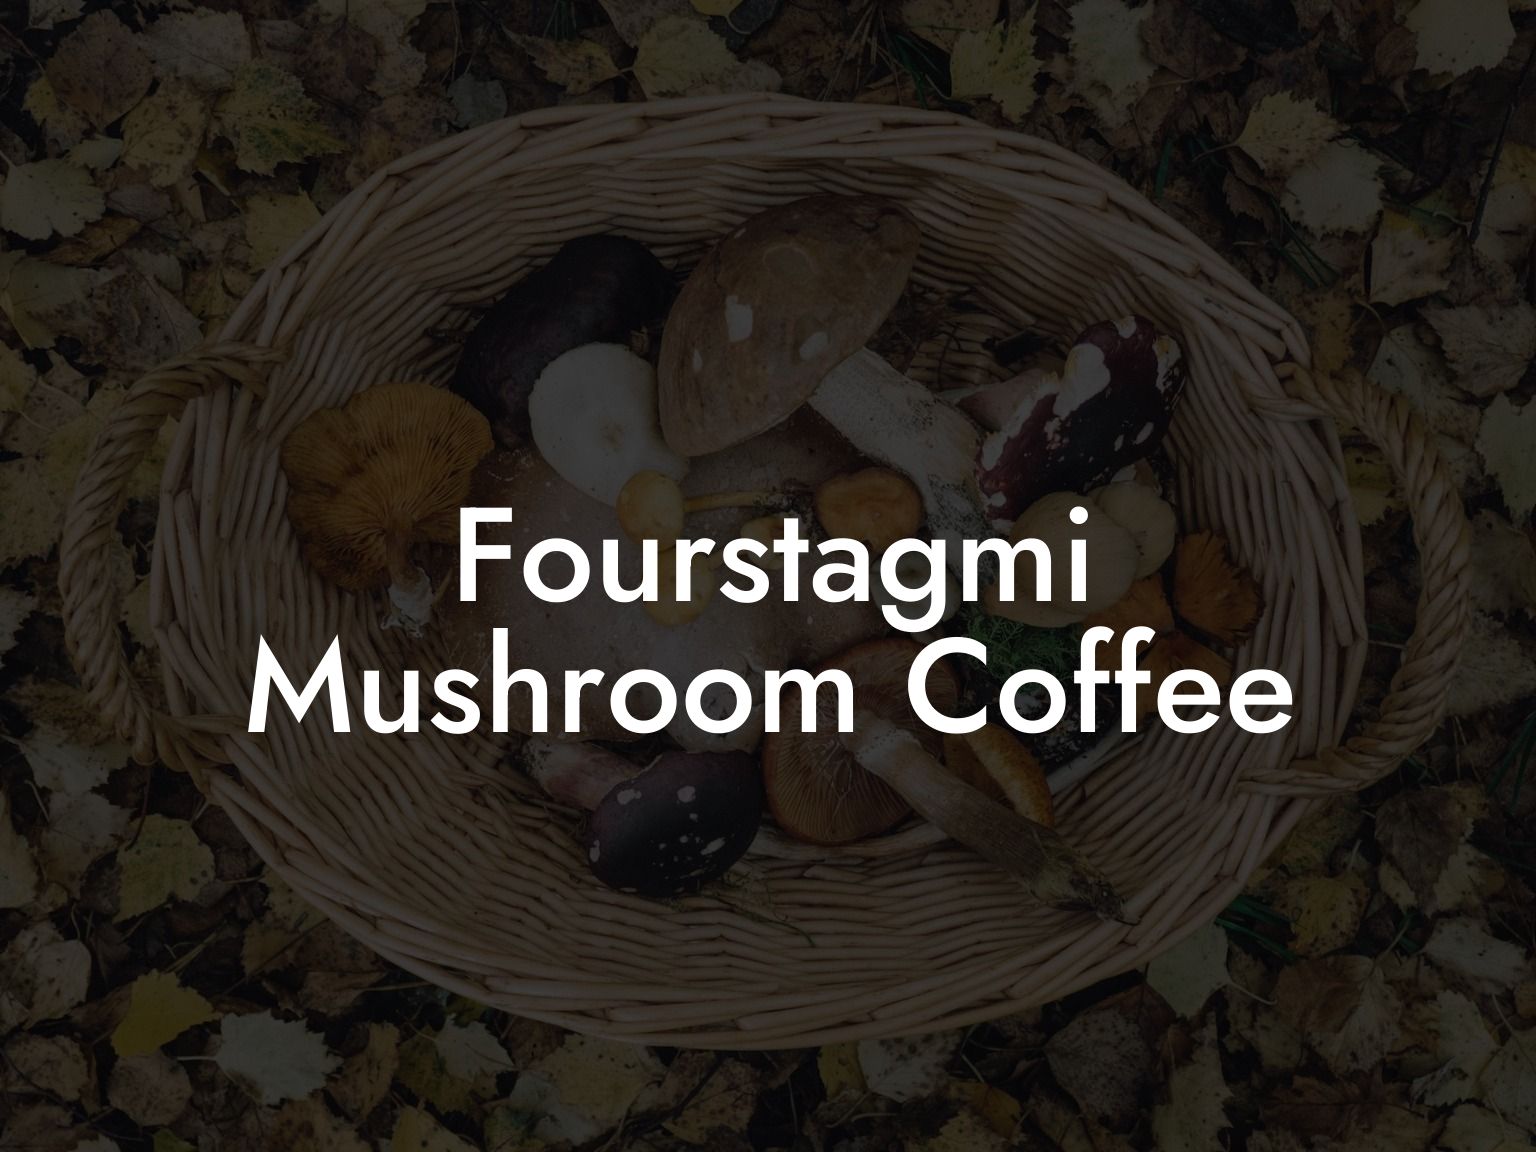 Fourstagmi Mushroom Coffee